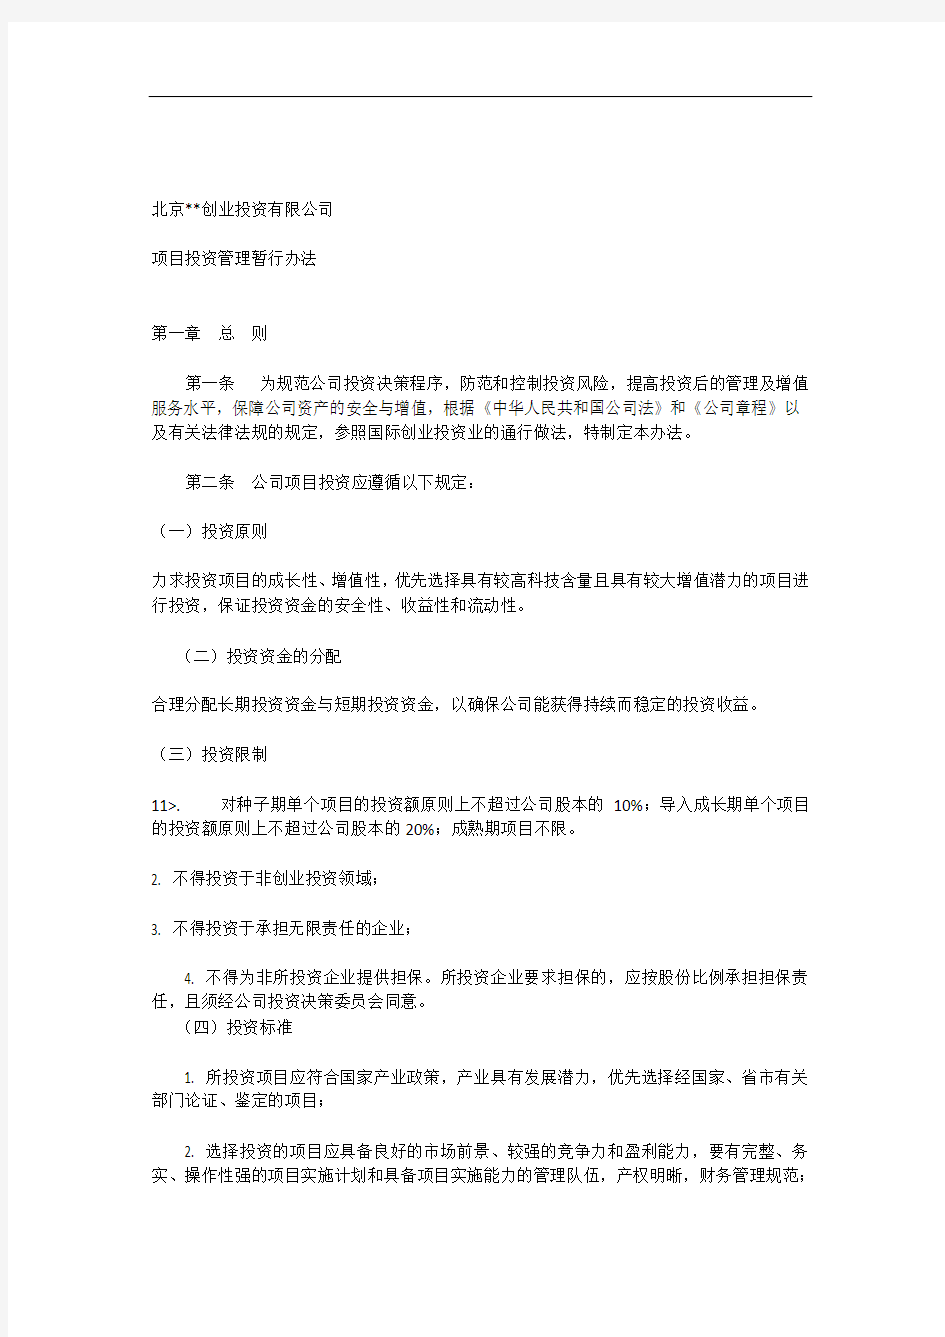 北京XX创业投资有限公司项目投资管理暂行办法_[全文]